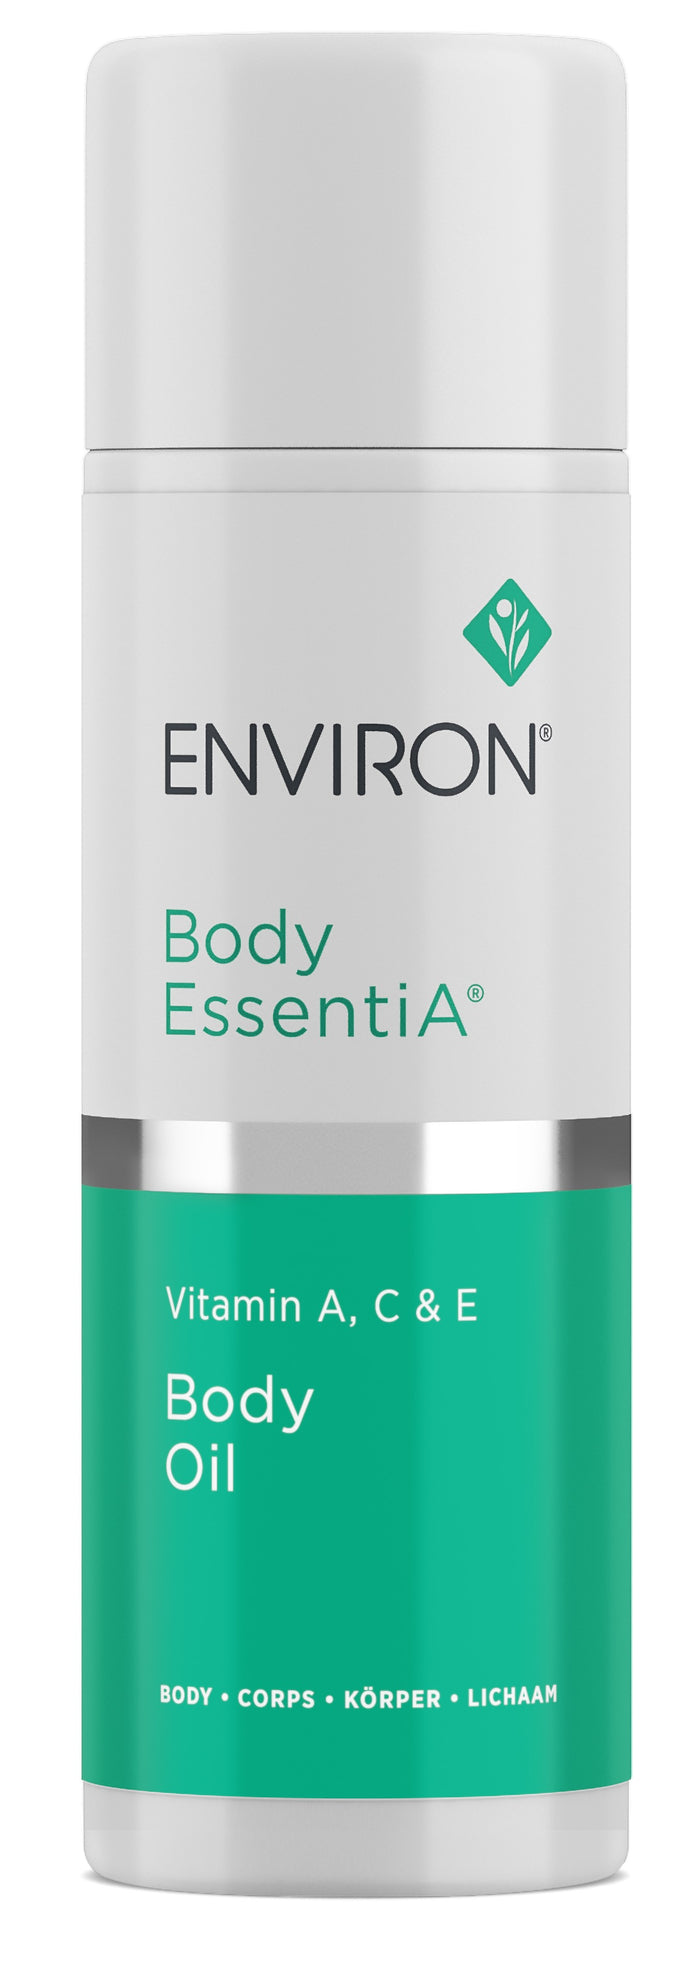 Vitamin A, C & E Body Oil